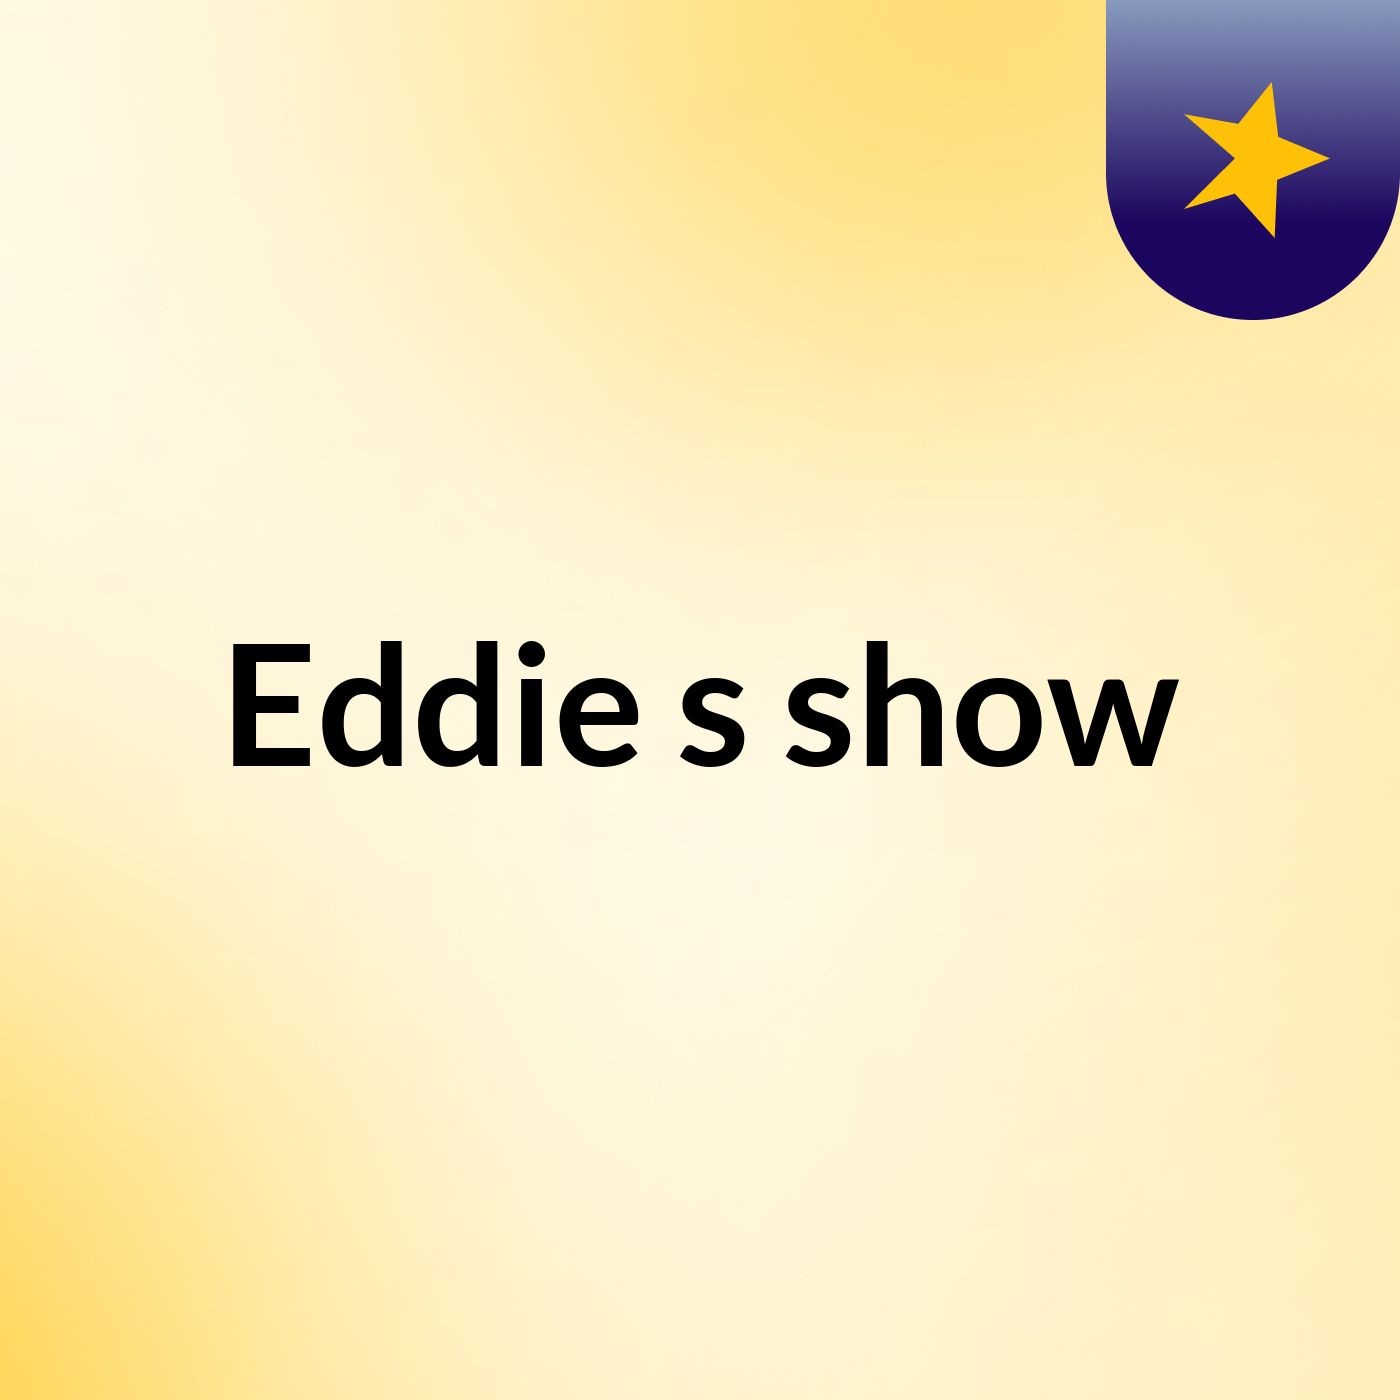 Eddie's show